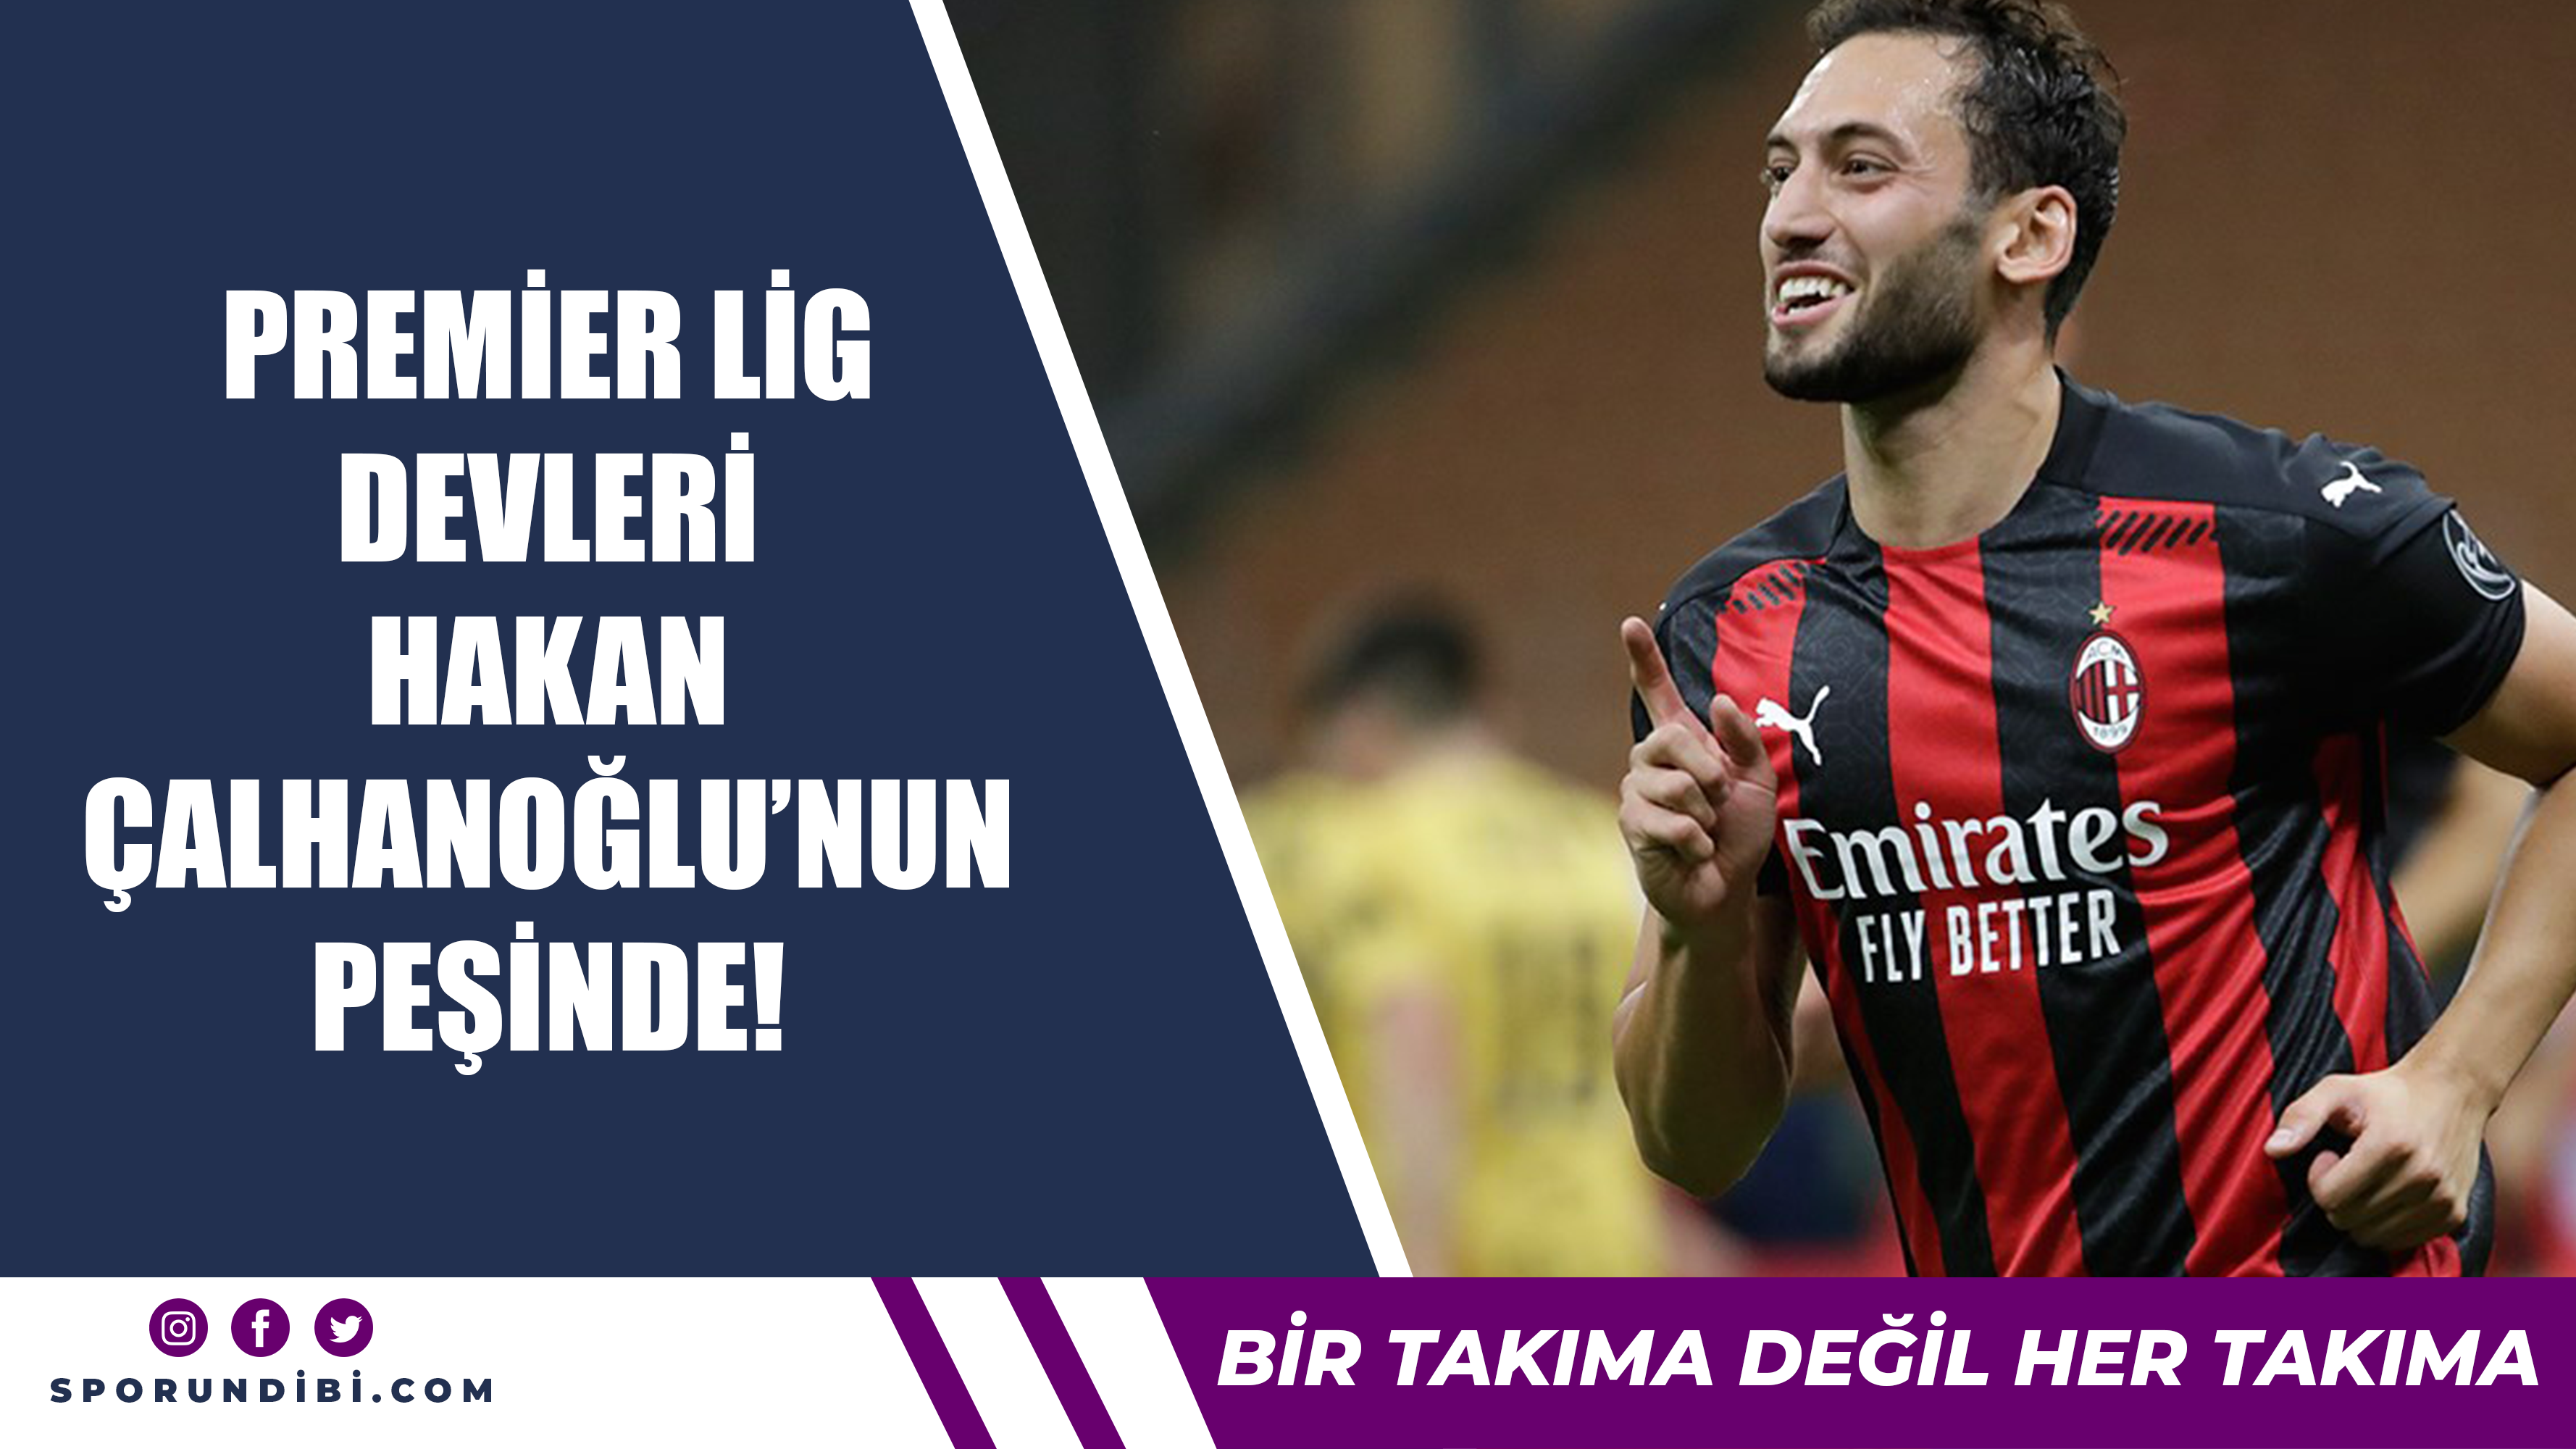 Premier Lig devleri Hakan Çalhanoğlu'nun peşinde!